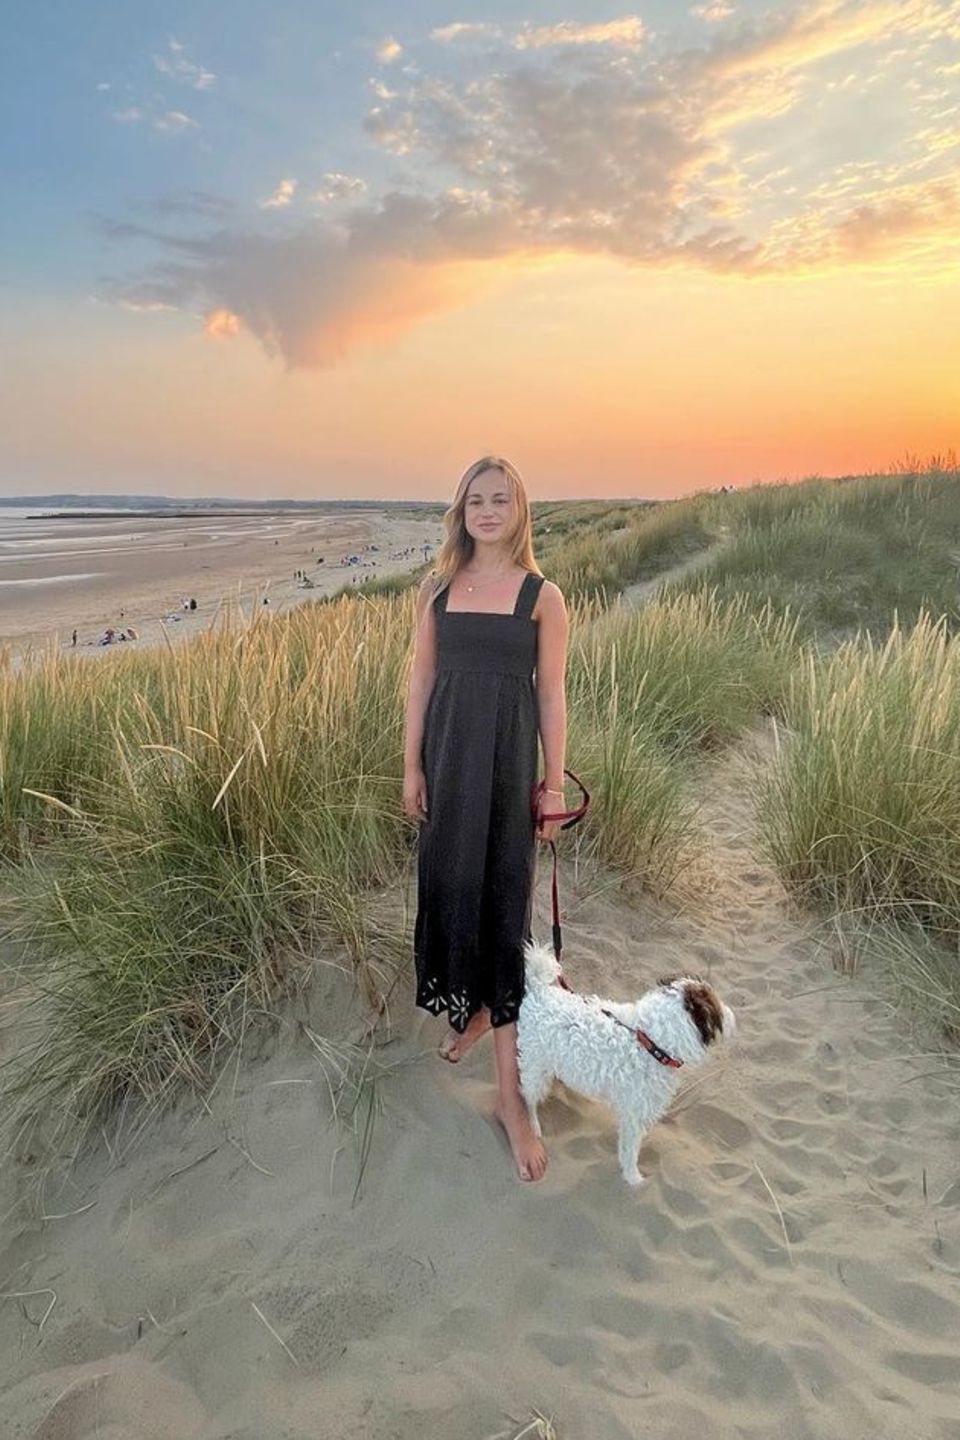 Urlaub in der Heimat: Diesen wunderschönen Moment teilt Amelia Windsor mit ihren Fans auf Instagram. Vor einem romantischen Sonnenuntergang am Strand strahlt das Model in die Kamera. Passend zum legeren Strandspaziergäng trägt Amelia ein luftiges, bodenlanges schwarzes Kleid – und ist barfuß unterwegs. Simple, aber doch so schön. 